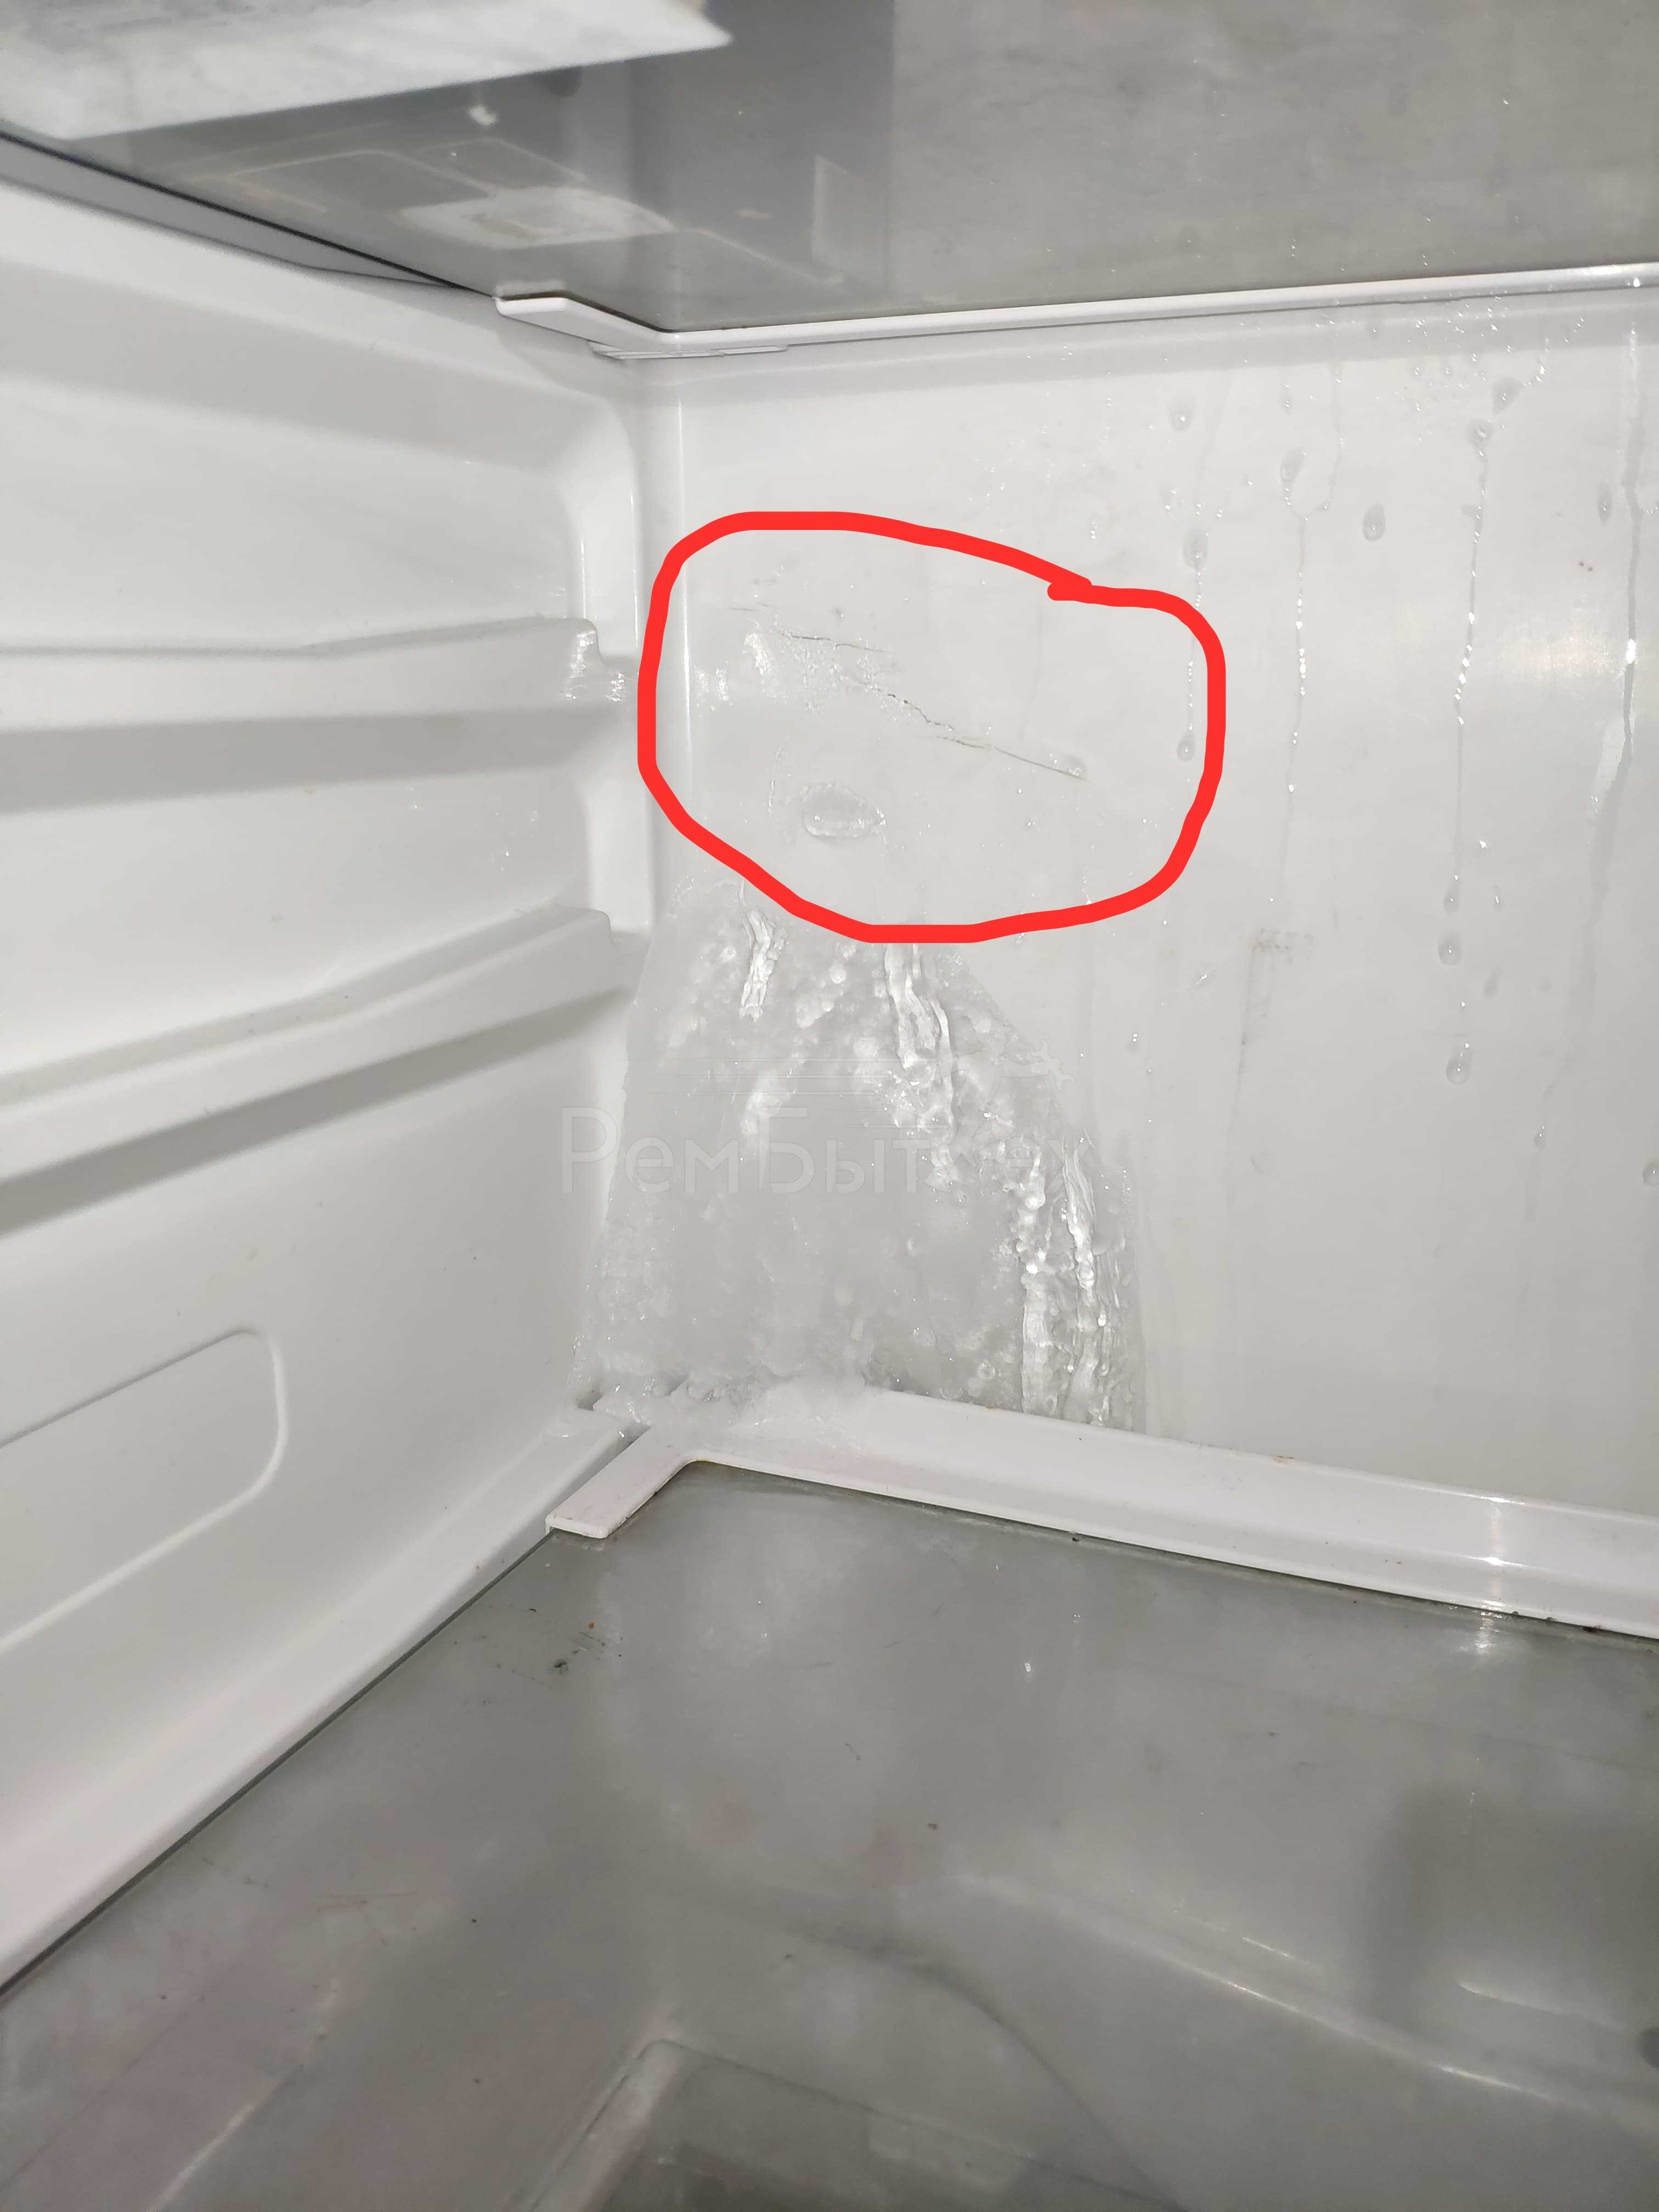 Не работает холодильник а морозилка работает: почему, в чем причина, нормально, свет есть что может быть, гудит верхняя камера, способы устранения поломки, проблема, компрессор включается хорошо, неис